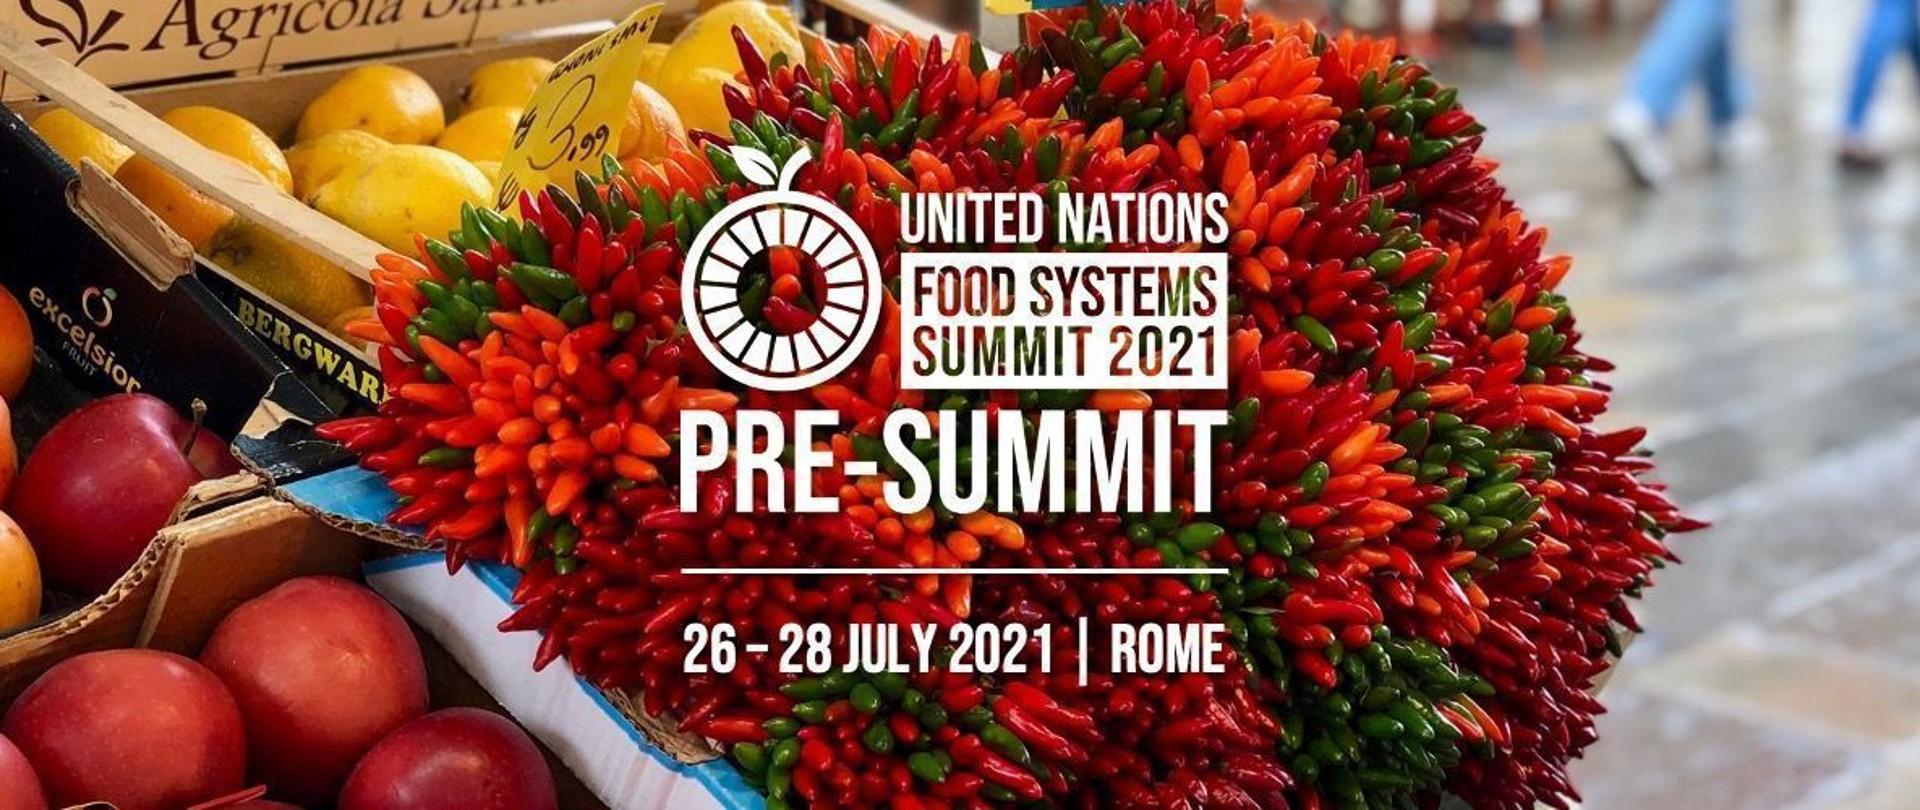 Wszyscy możemy wziąć udział w wydarzeniach poprzedzających Szczyt Systemów Żywnościowych ONZ 2021